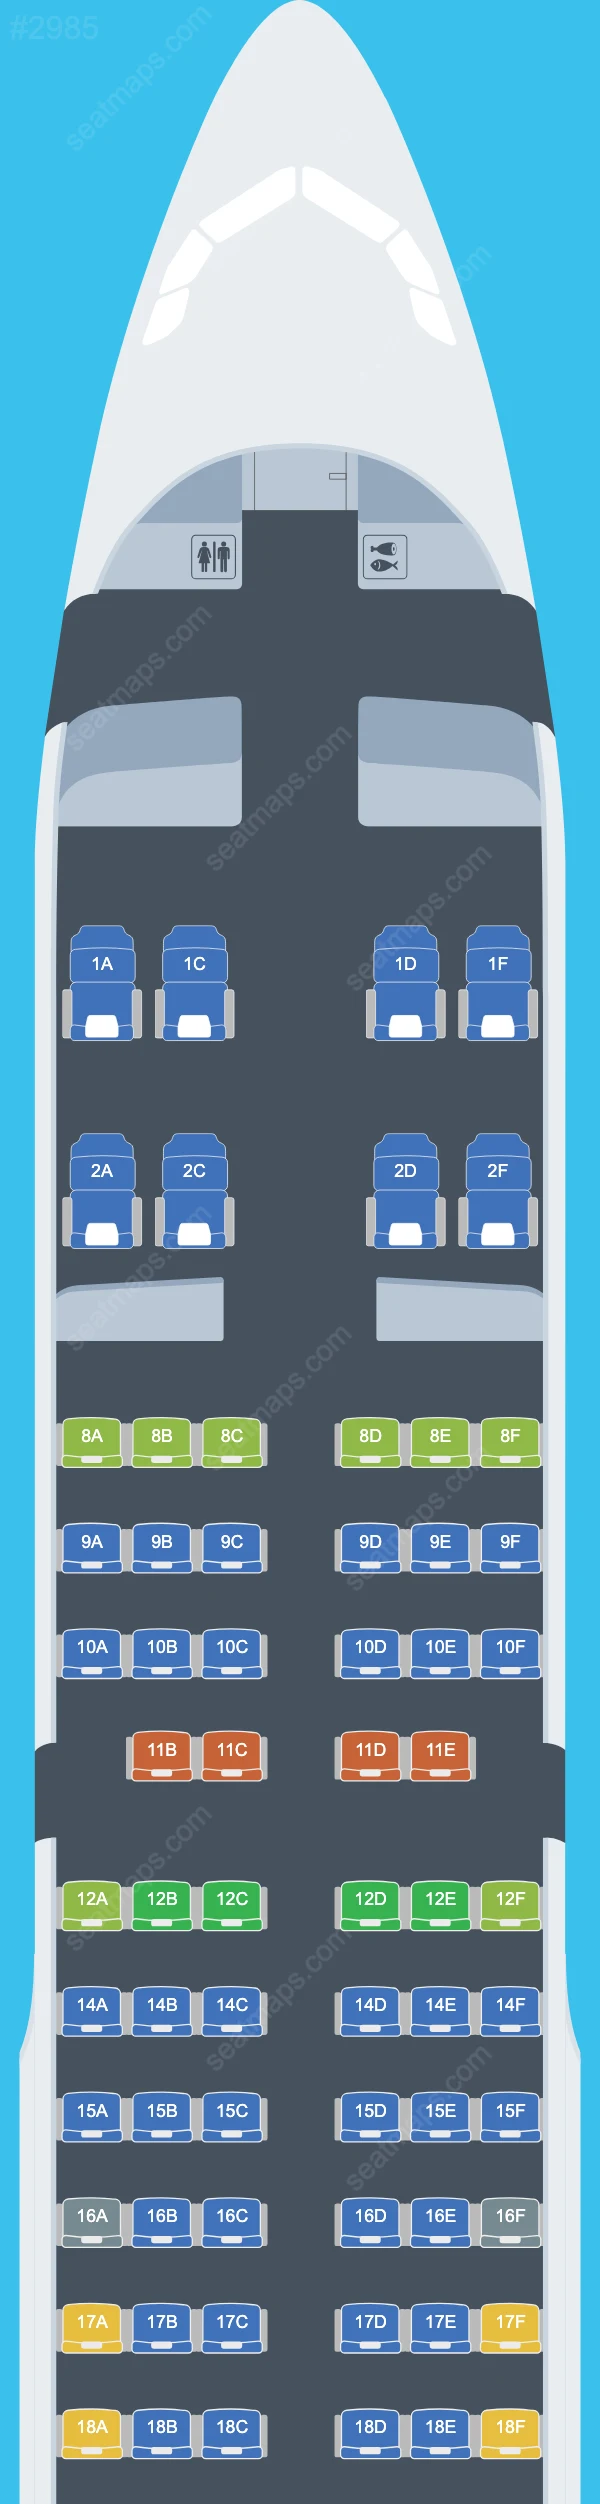 Gulf Air Airbus A321 Seat Maps A321-200